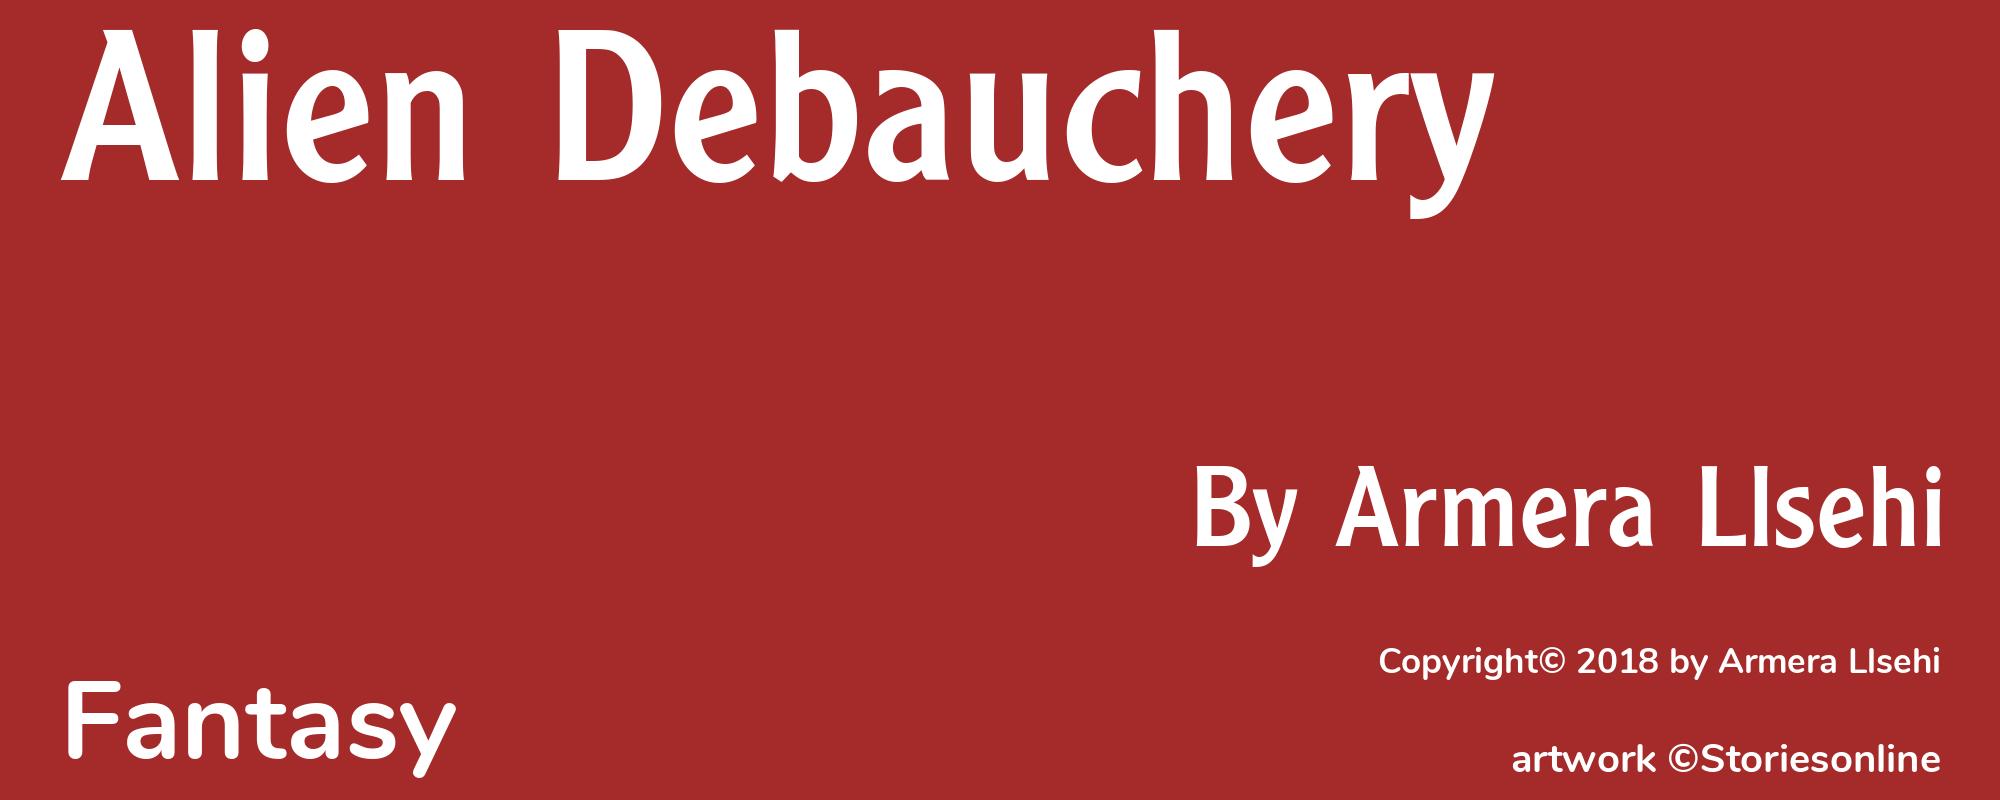 Alien Debauchery - Cover